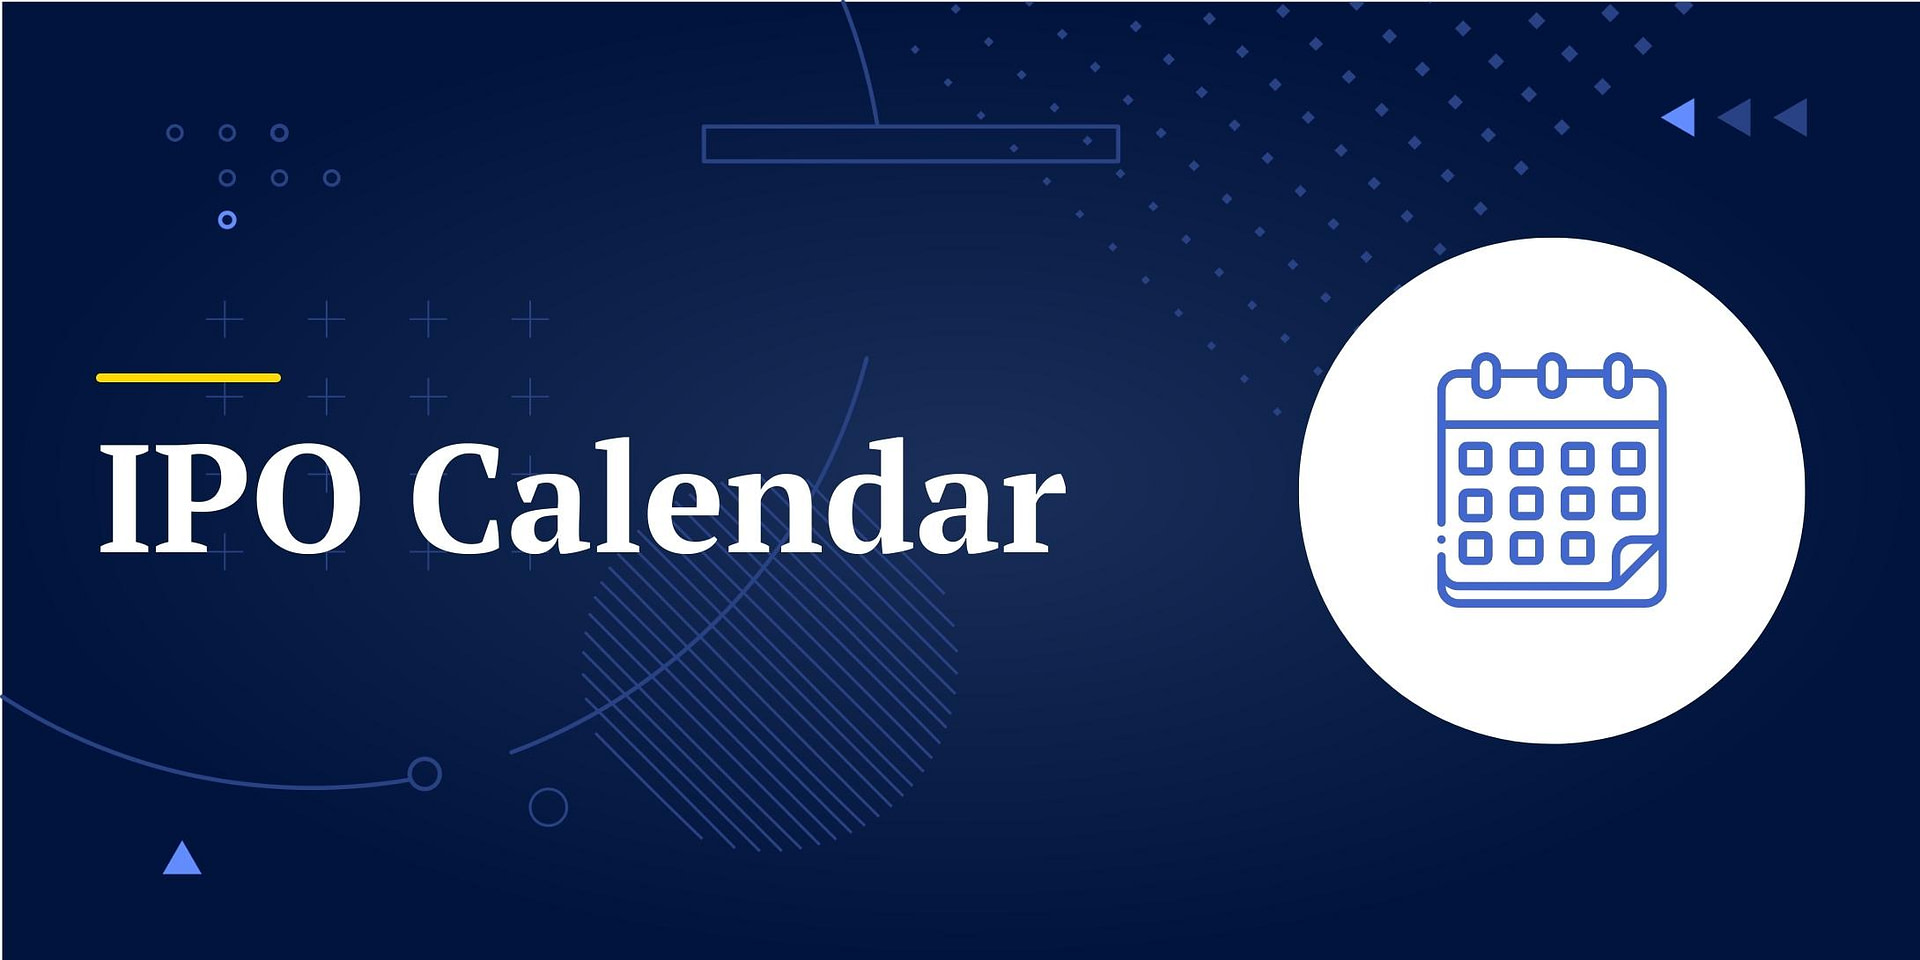 IPO Calendar - FinMasters